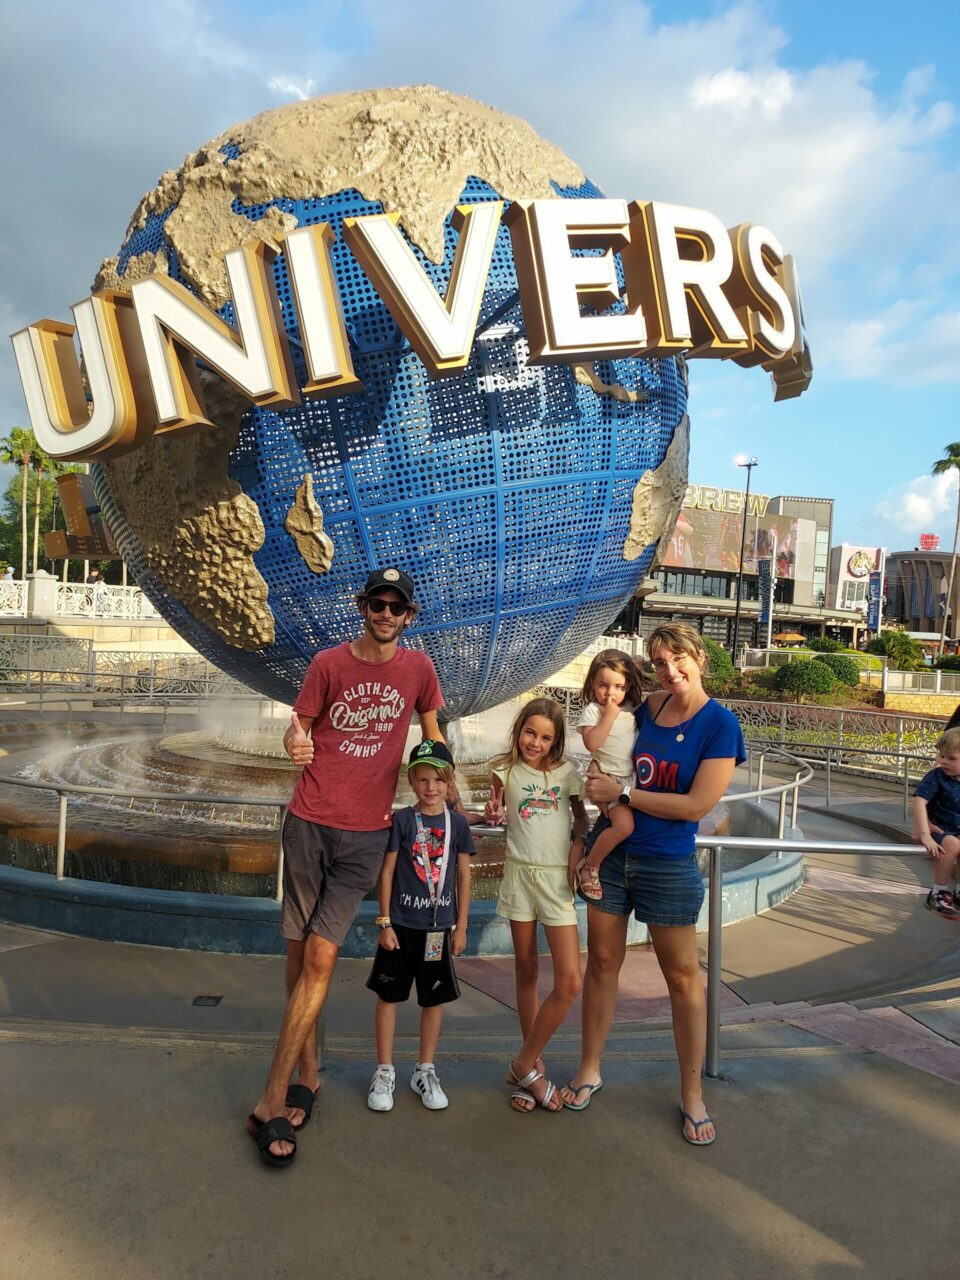 Quels parcs d’attractions visiter à Orlando, Floride ? 3 jours à Universal Studios